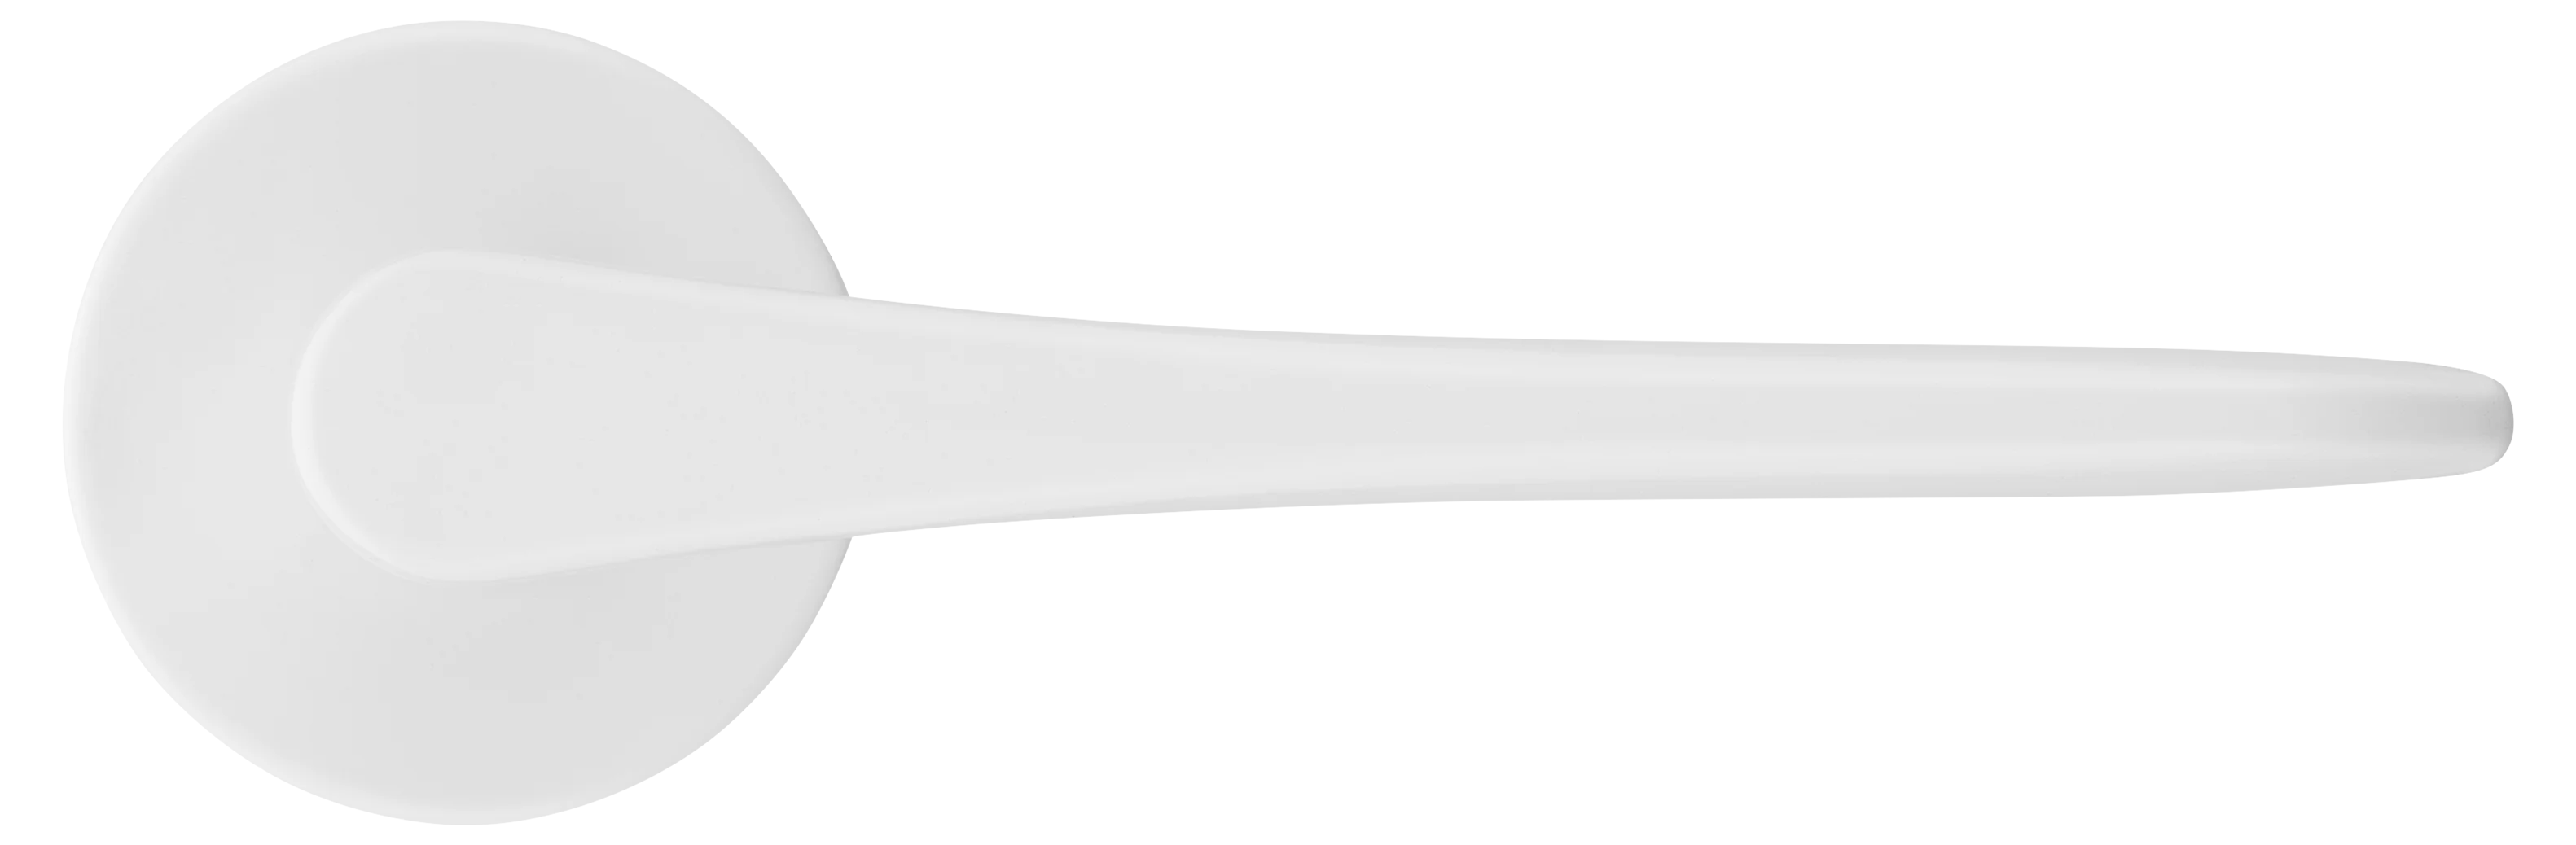 AULA R5 BIA, ручка дверная на розетке 7мм, цвет -  белый фото купить в Чебоксарах